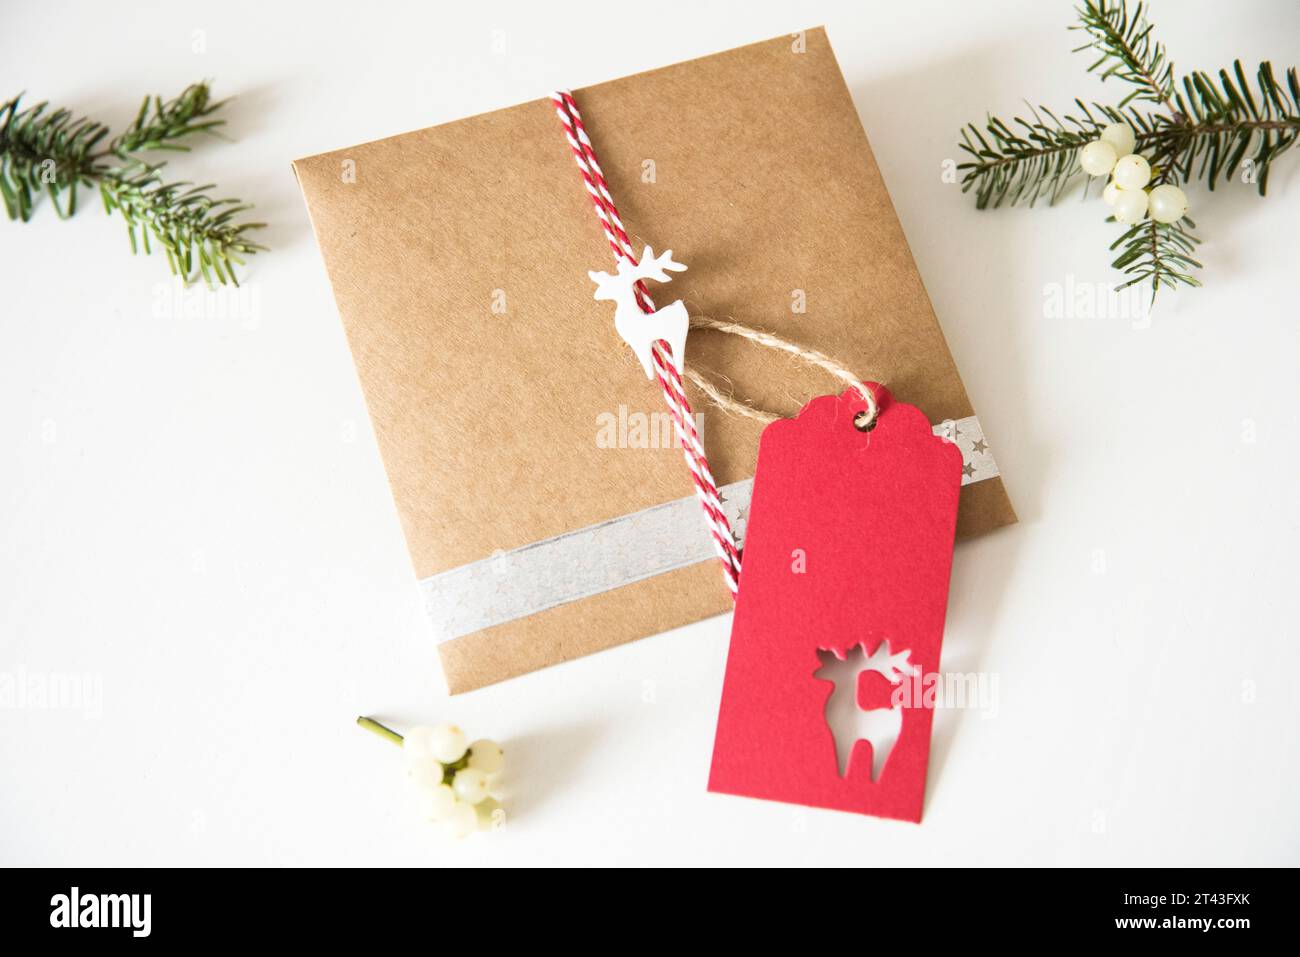 Regalo de vacaciones rústicas con papel artesanal, adornado con un encantador reno y ramas de abeto fragantes, capturando la esencia de la traditio navideña Foto de stock